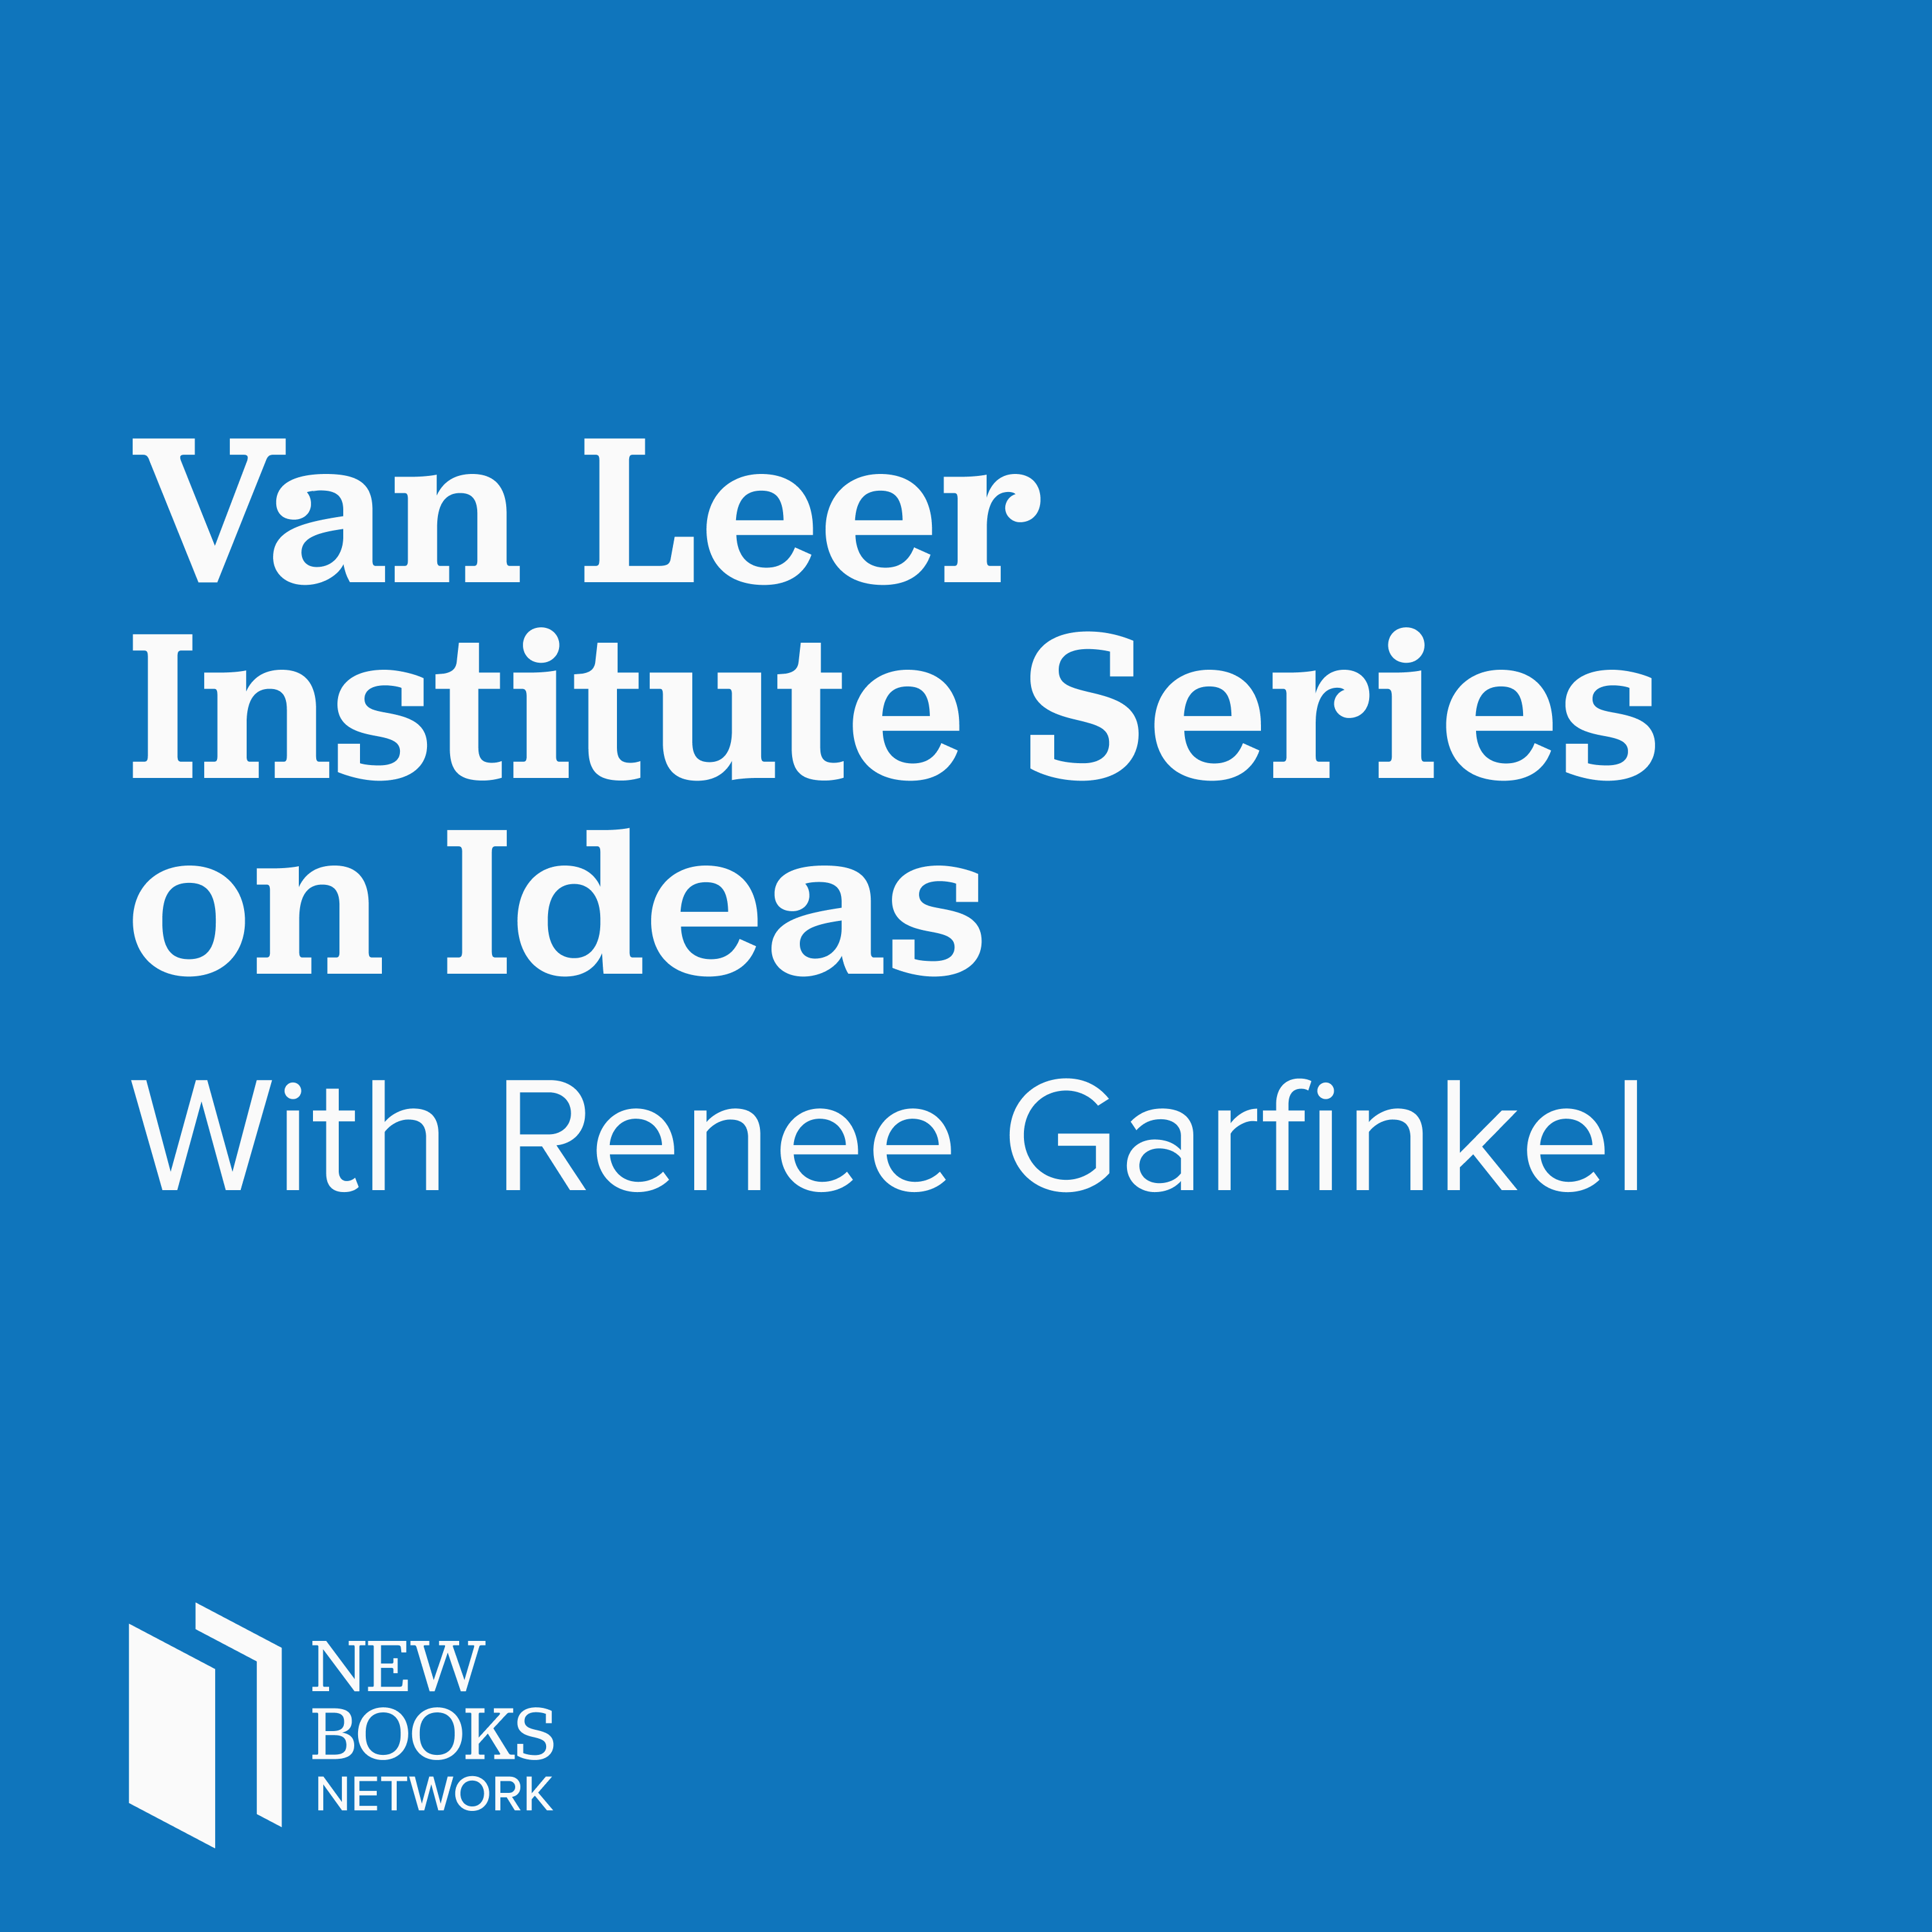 Van Leer Institute Series on Ideas with Renee Garfinkel